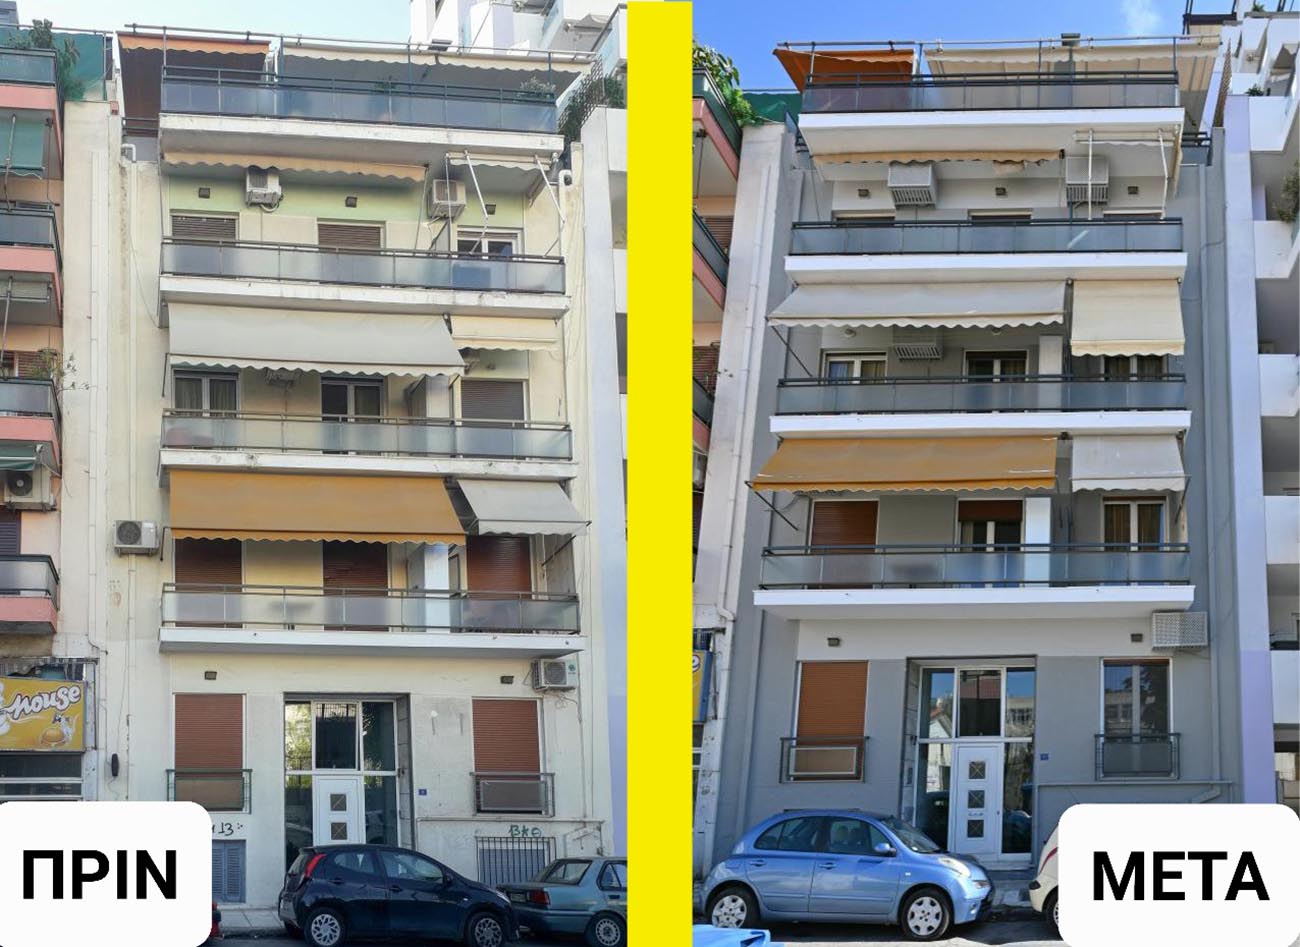 Πρόγραμα «Πρόσοψη»: Πολυκατοικίες, μονοκατοικίες και διατηρητέα της Αθήνας αλλάζουν όψη